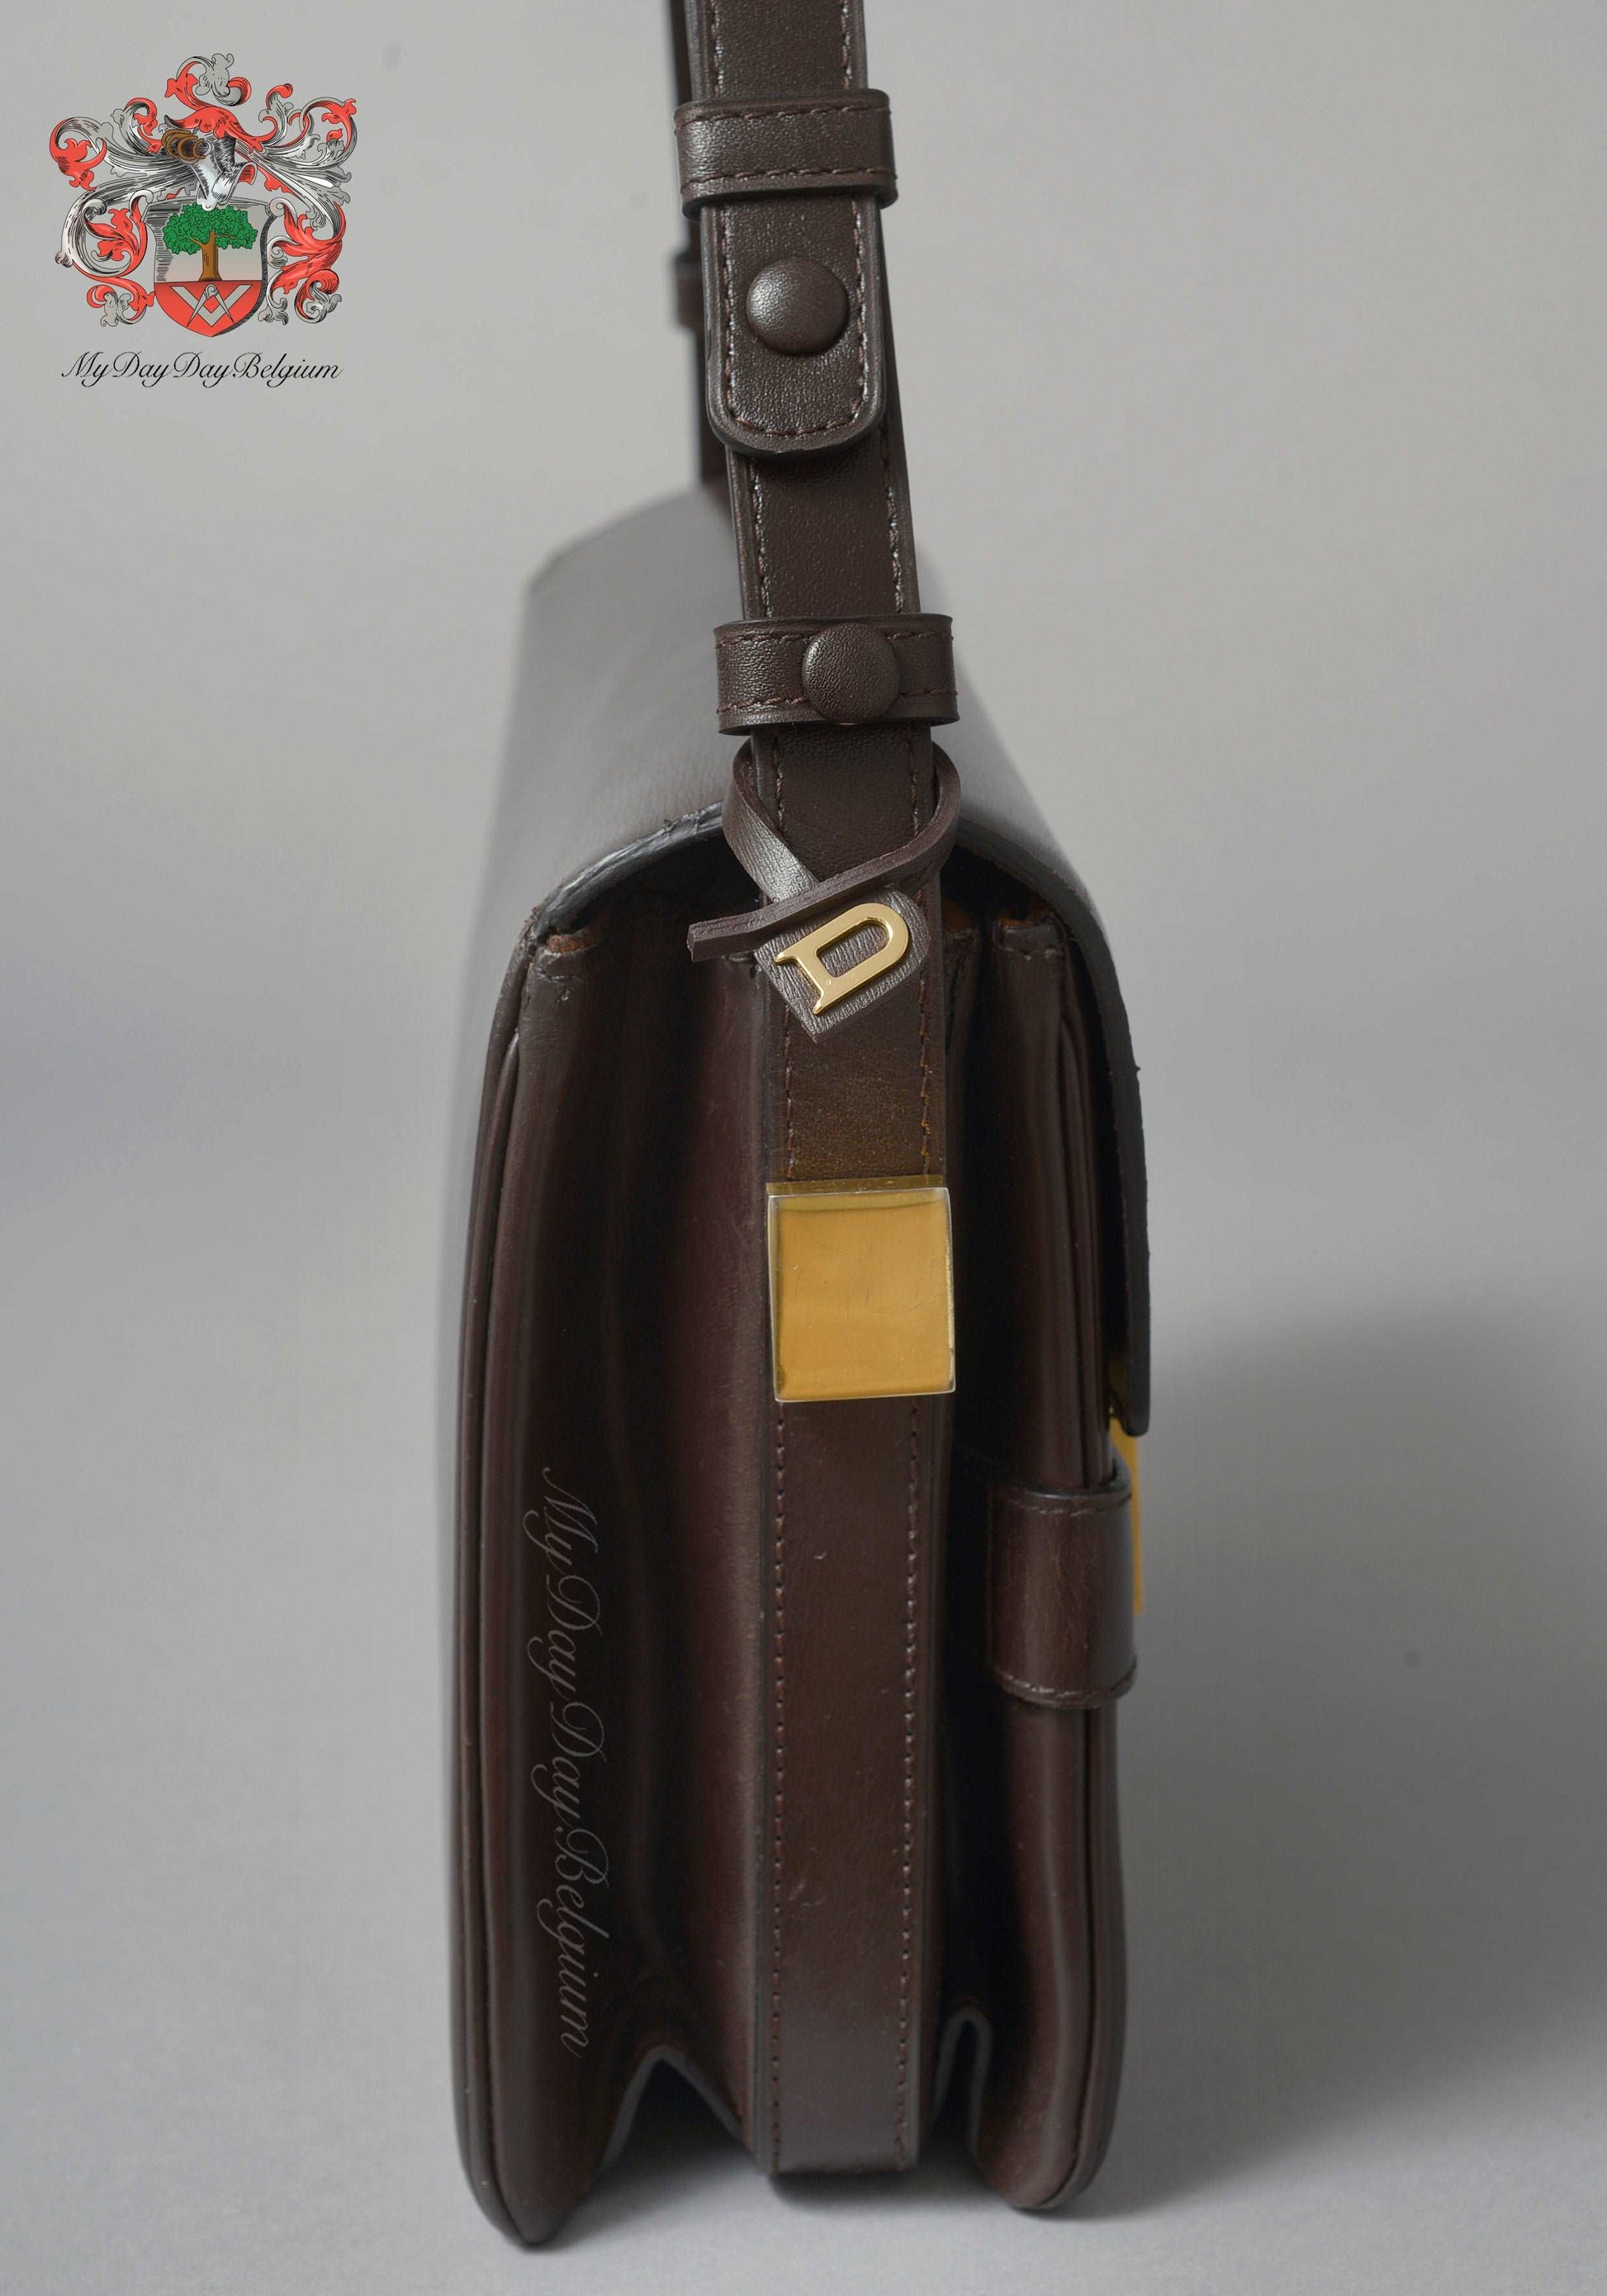 Delvaux vintage crossbody/shoulder bag 1977